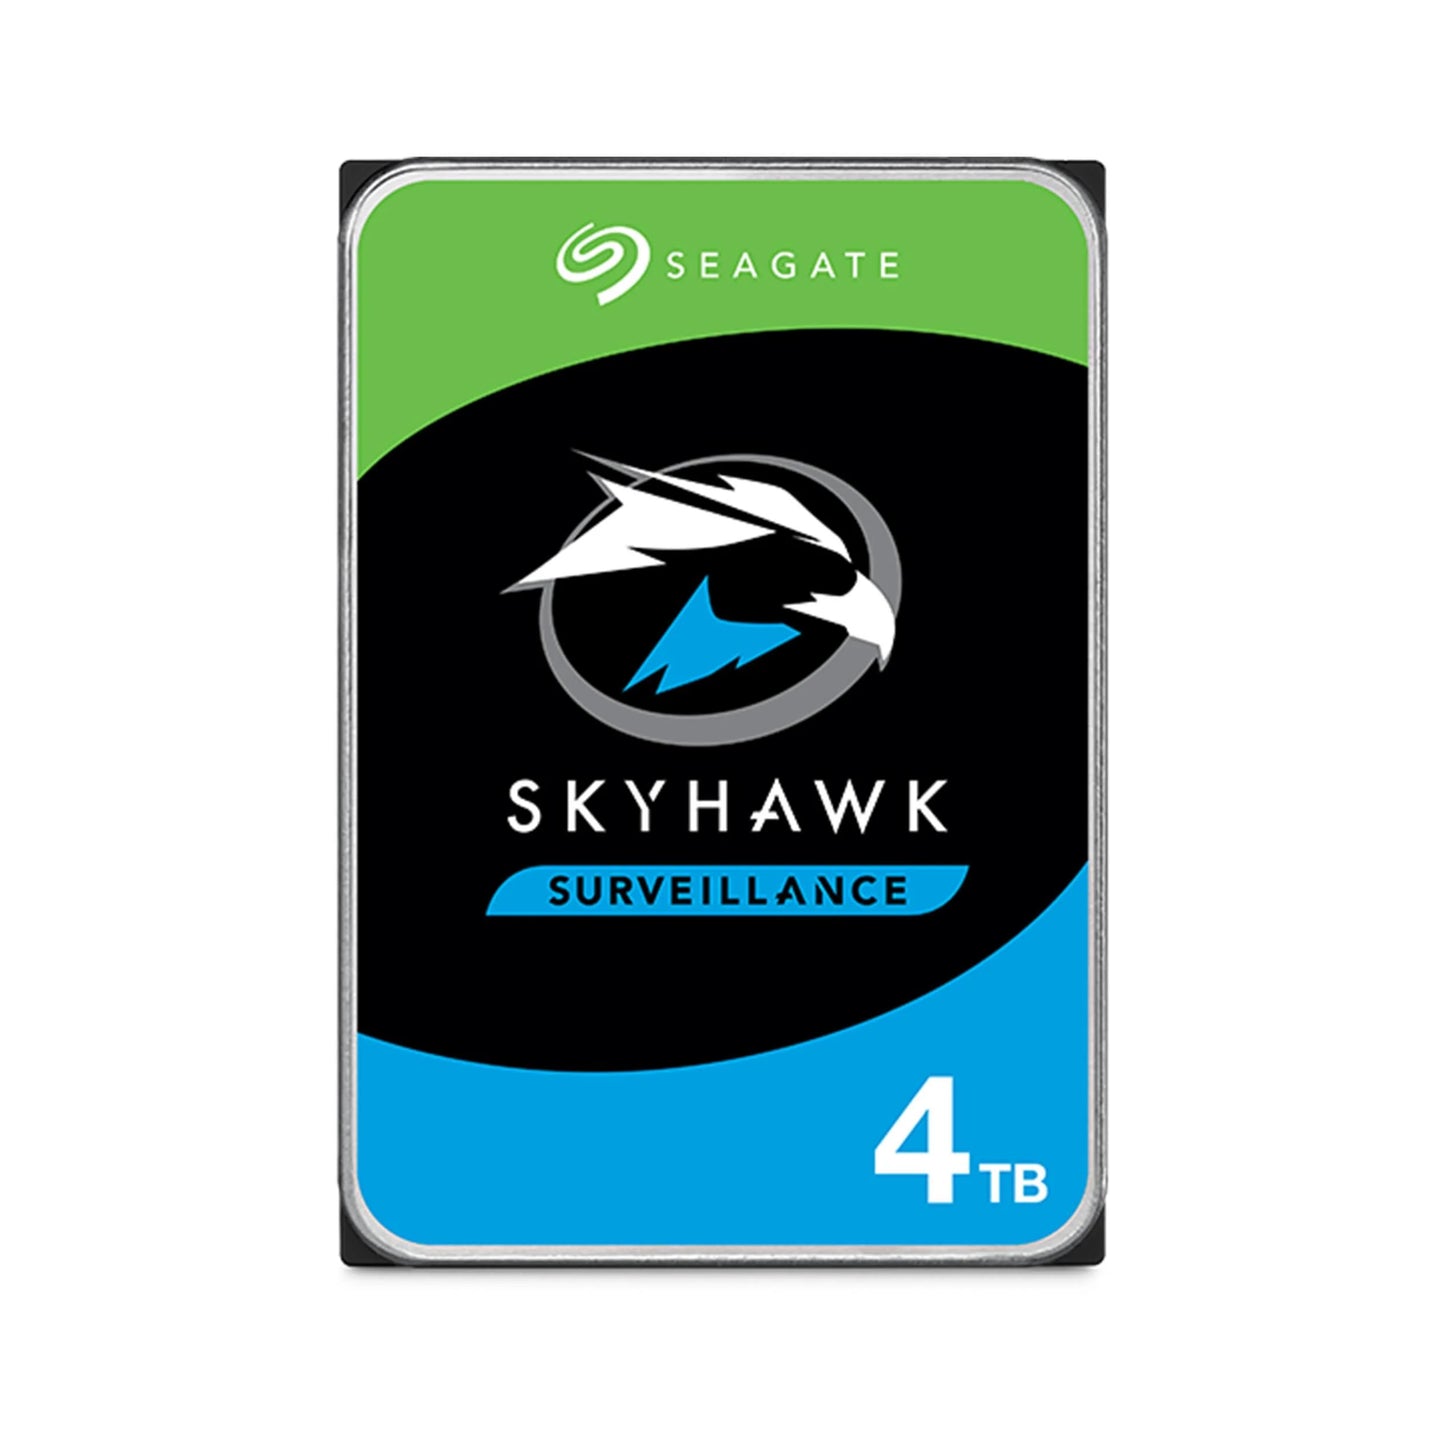 Seagate SkyHawk Surveillance 4TB Hard Drive